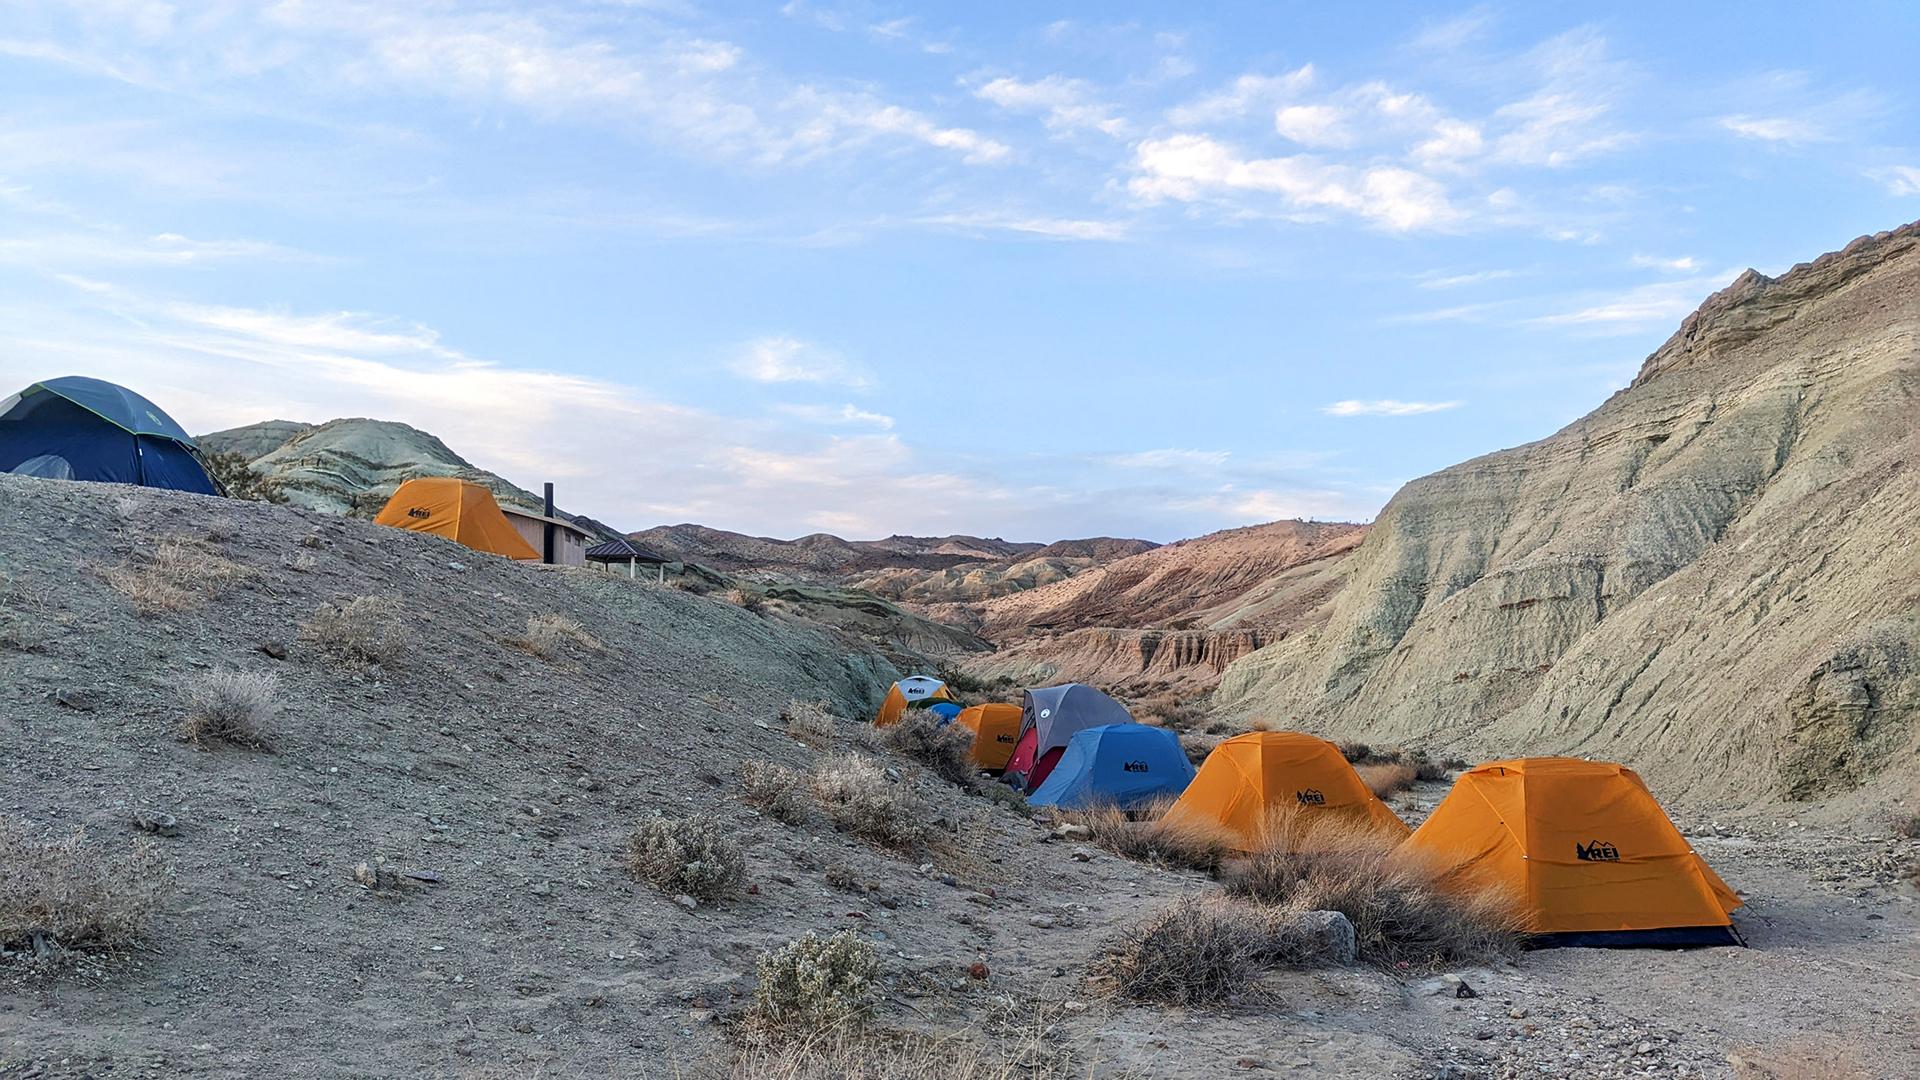 Tents set up in desert